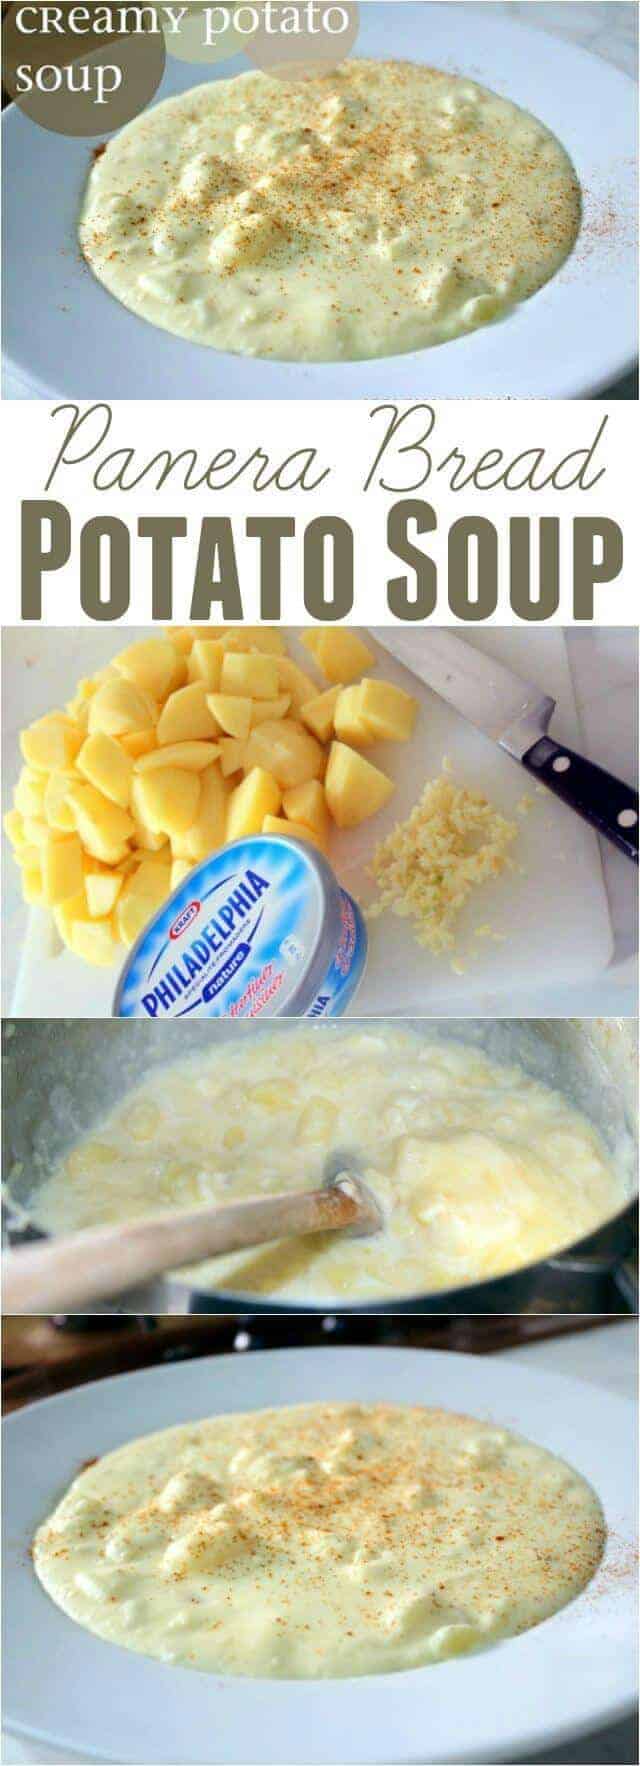 panera_bread_potato_soup